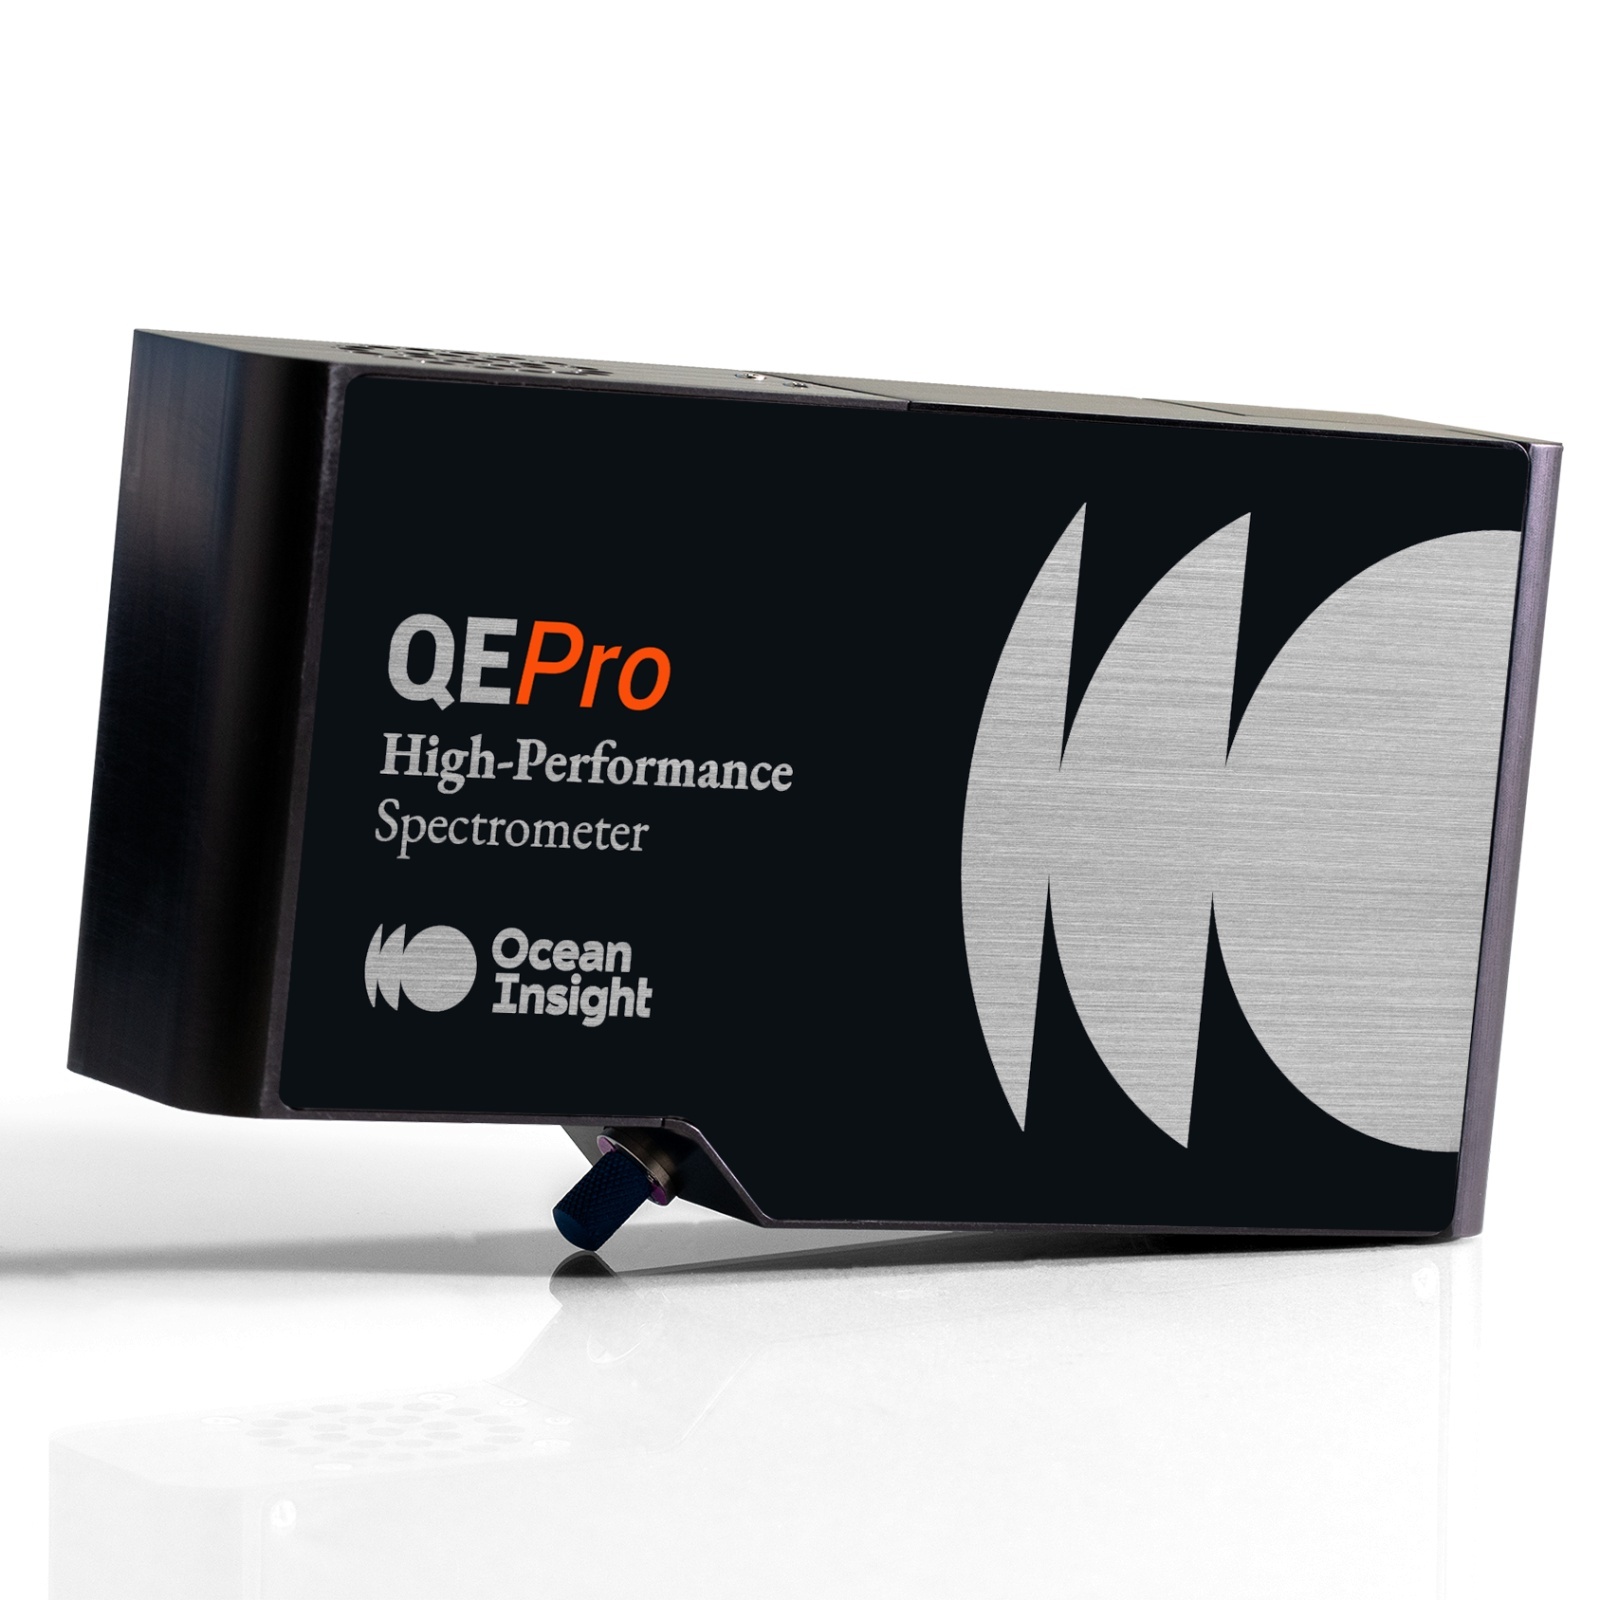 海洋光学高性能光谱仪QE Pro的图片